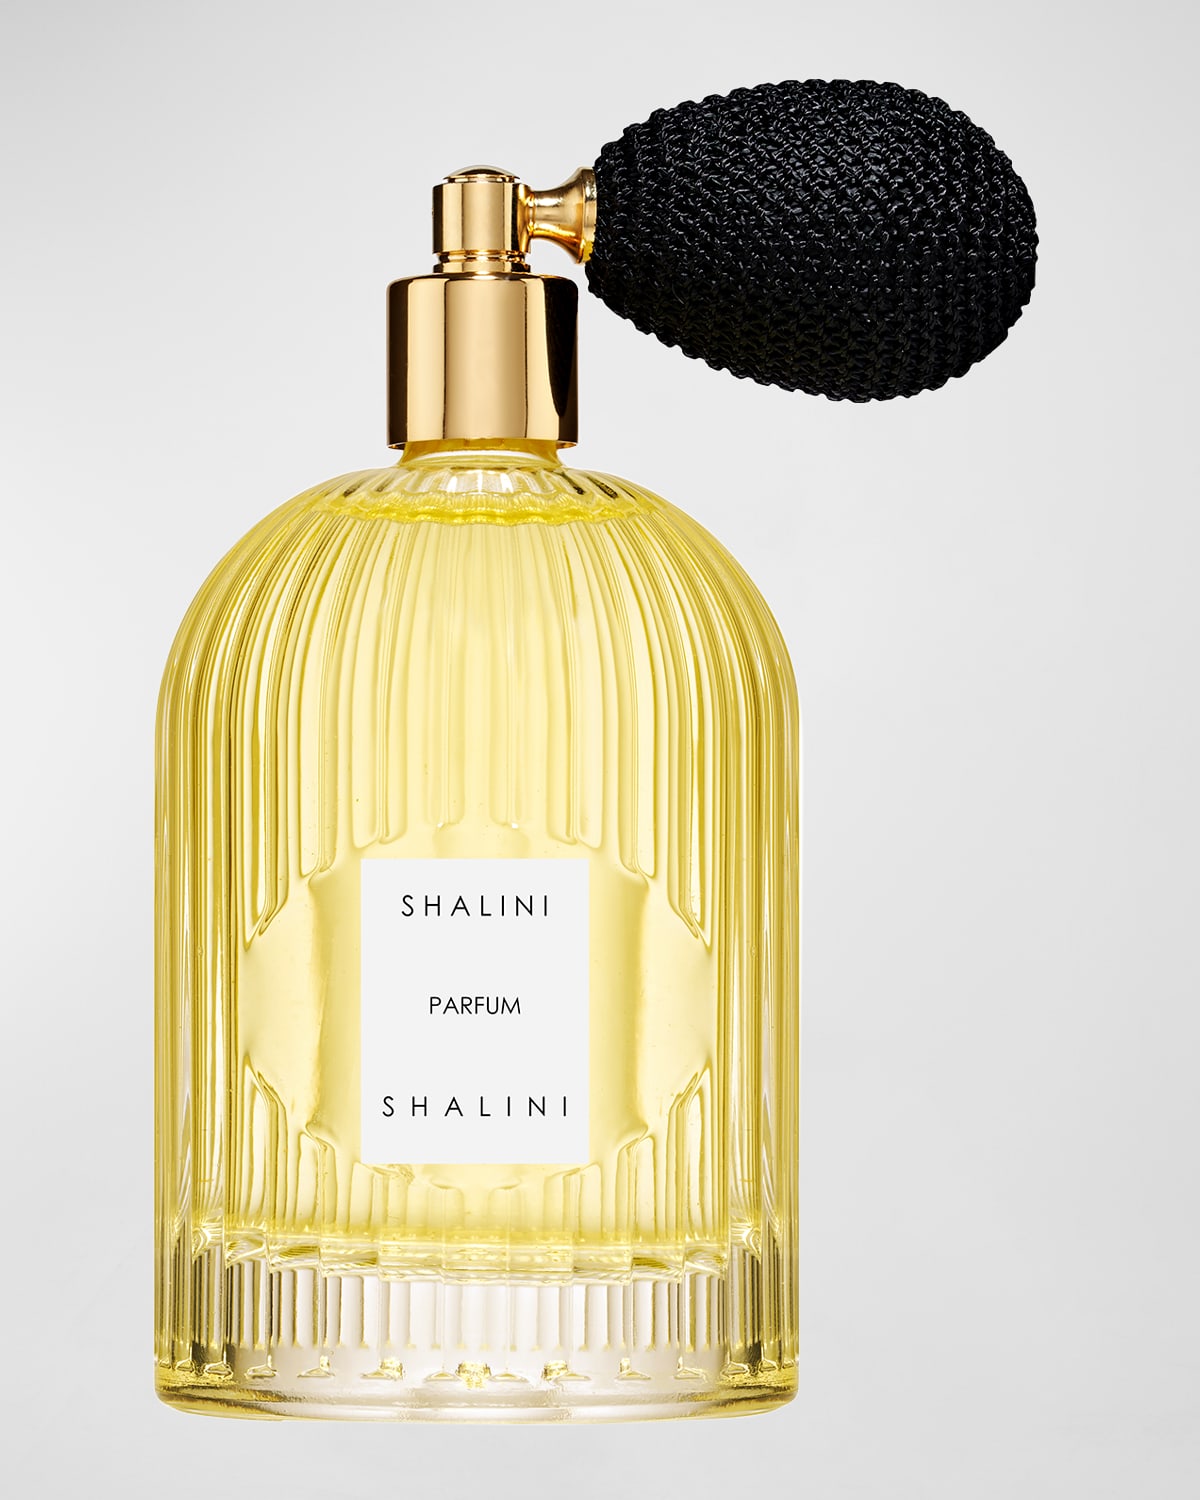 Shalini Eau de Parfum in Byzantine Glass Flacon w/ Black Bulb Atomizer